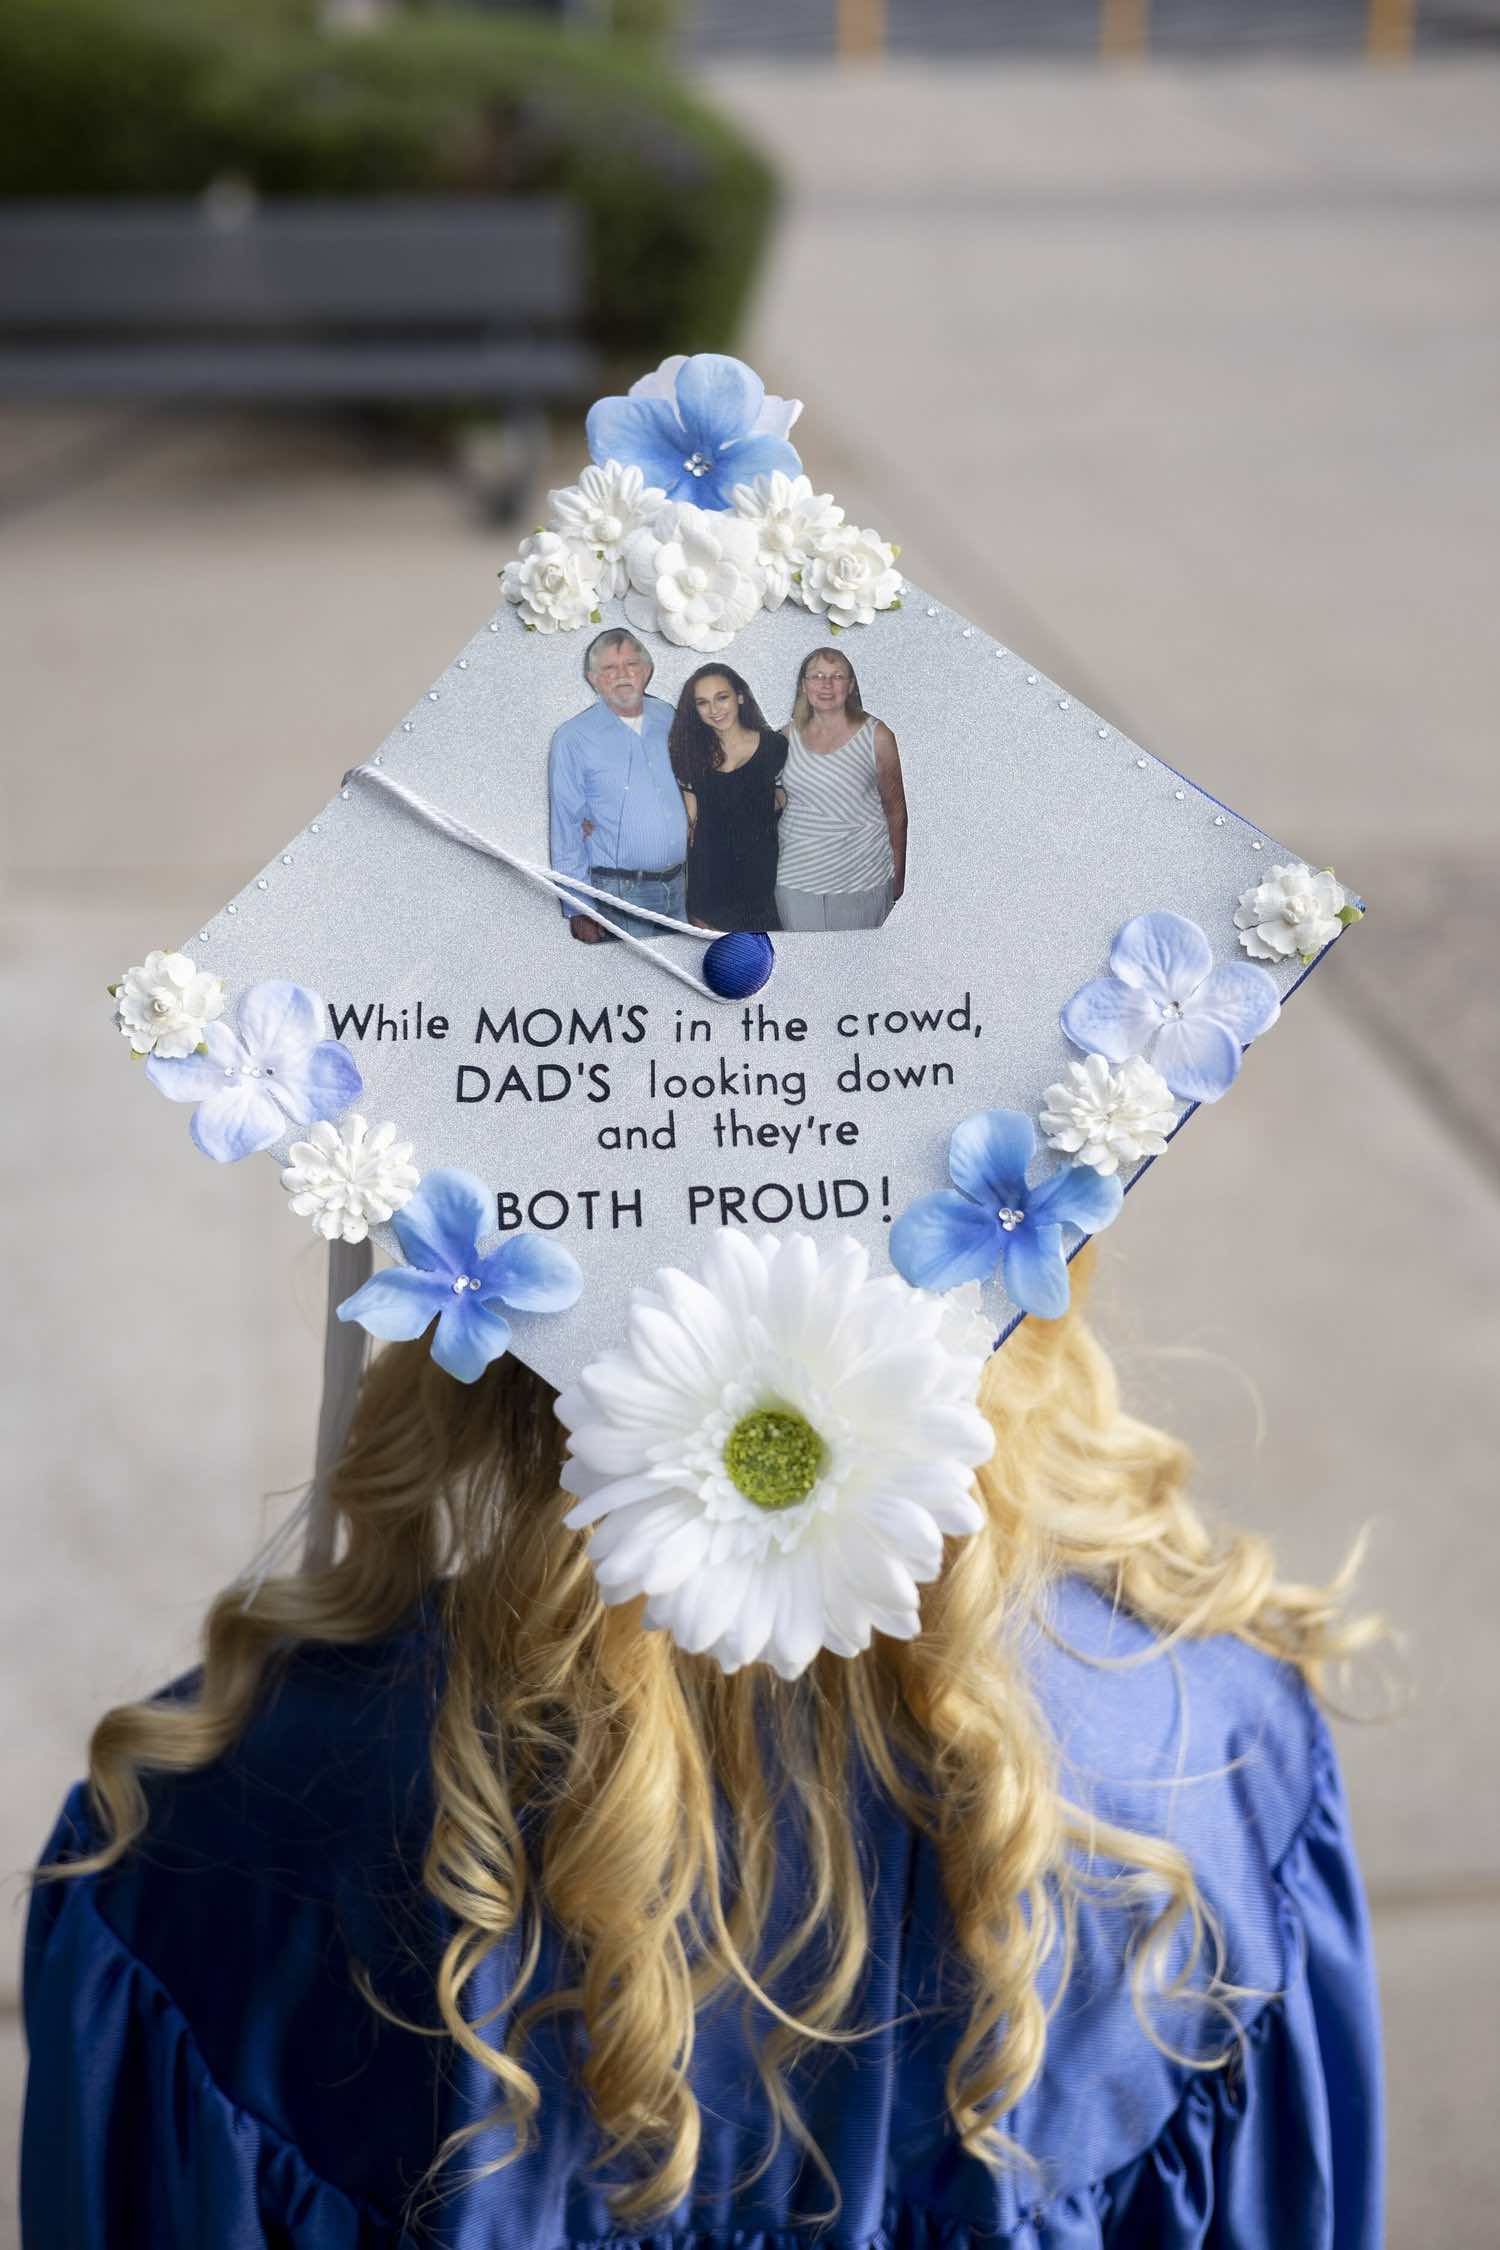 A decorated graduation cap, commemorating a graduate's parents